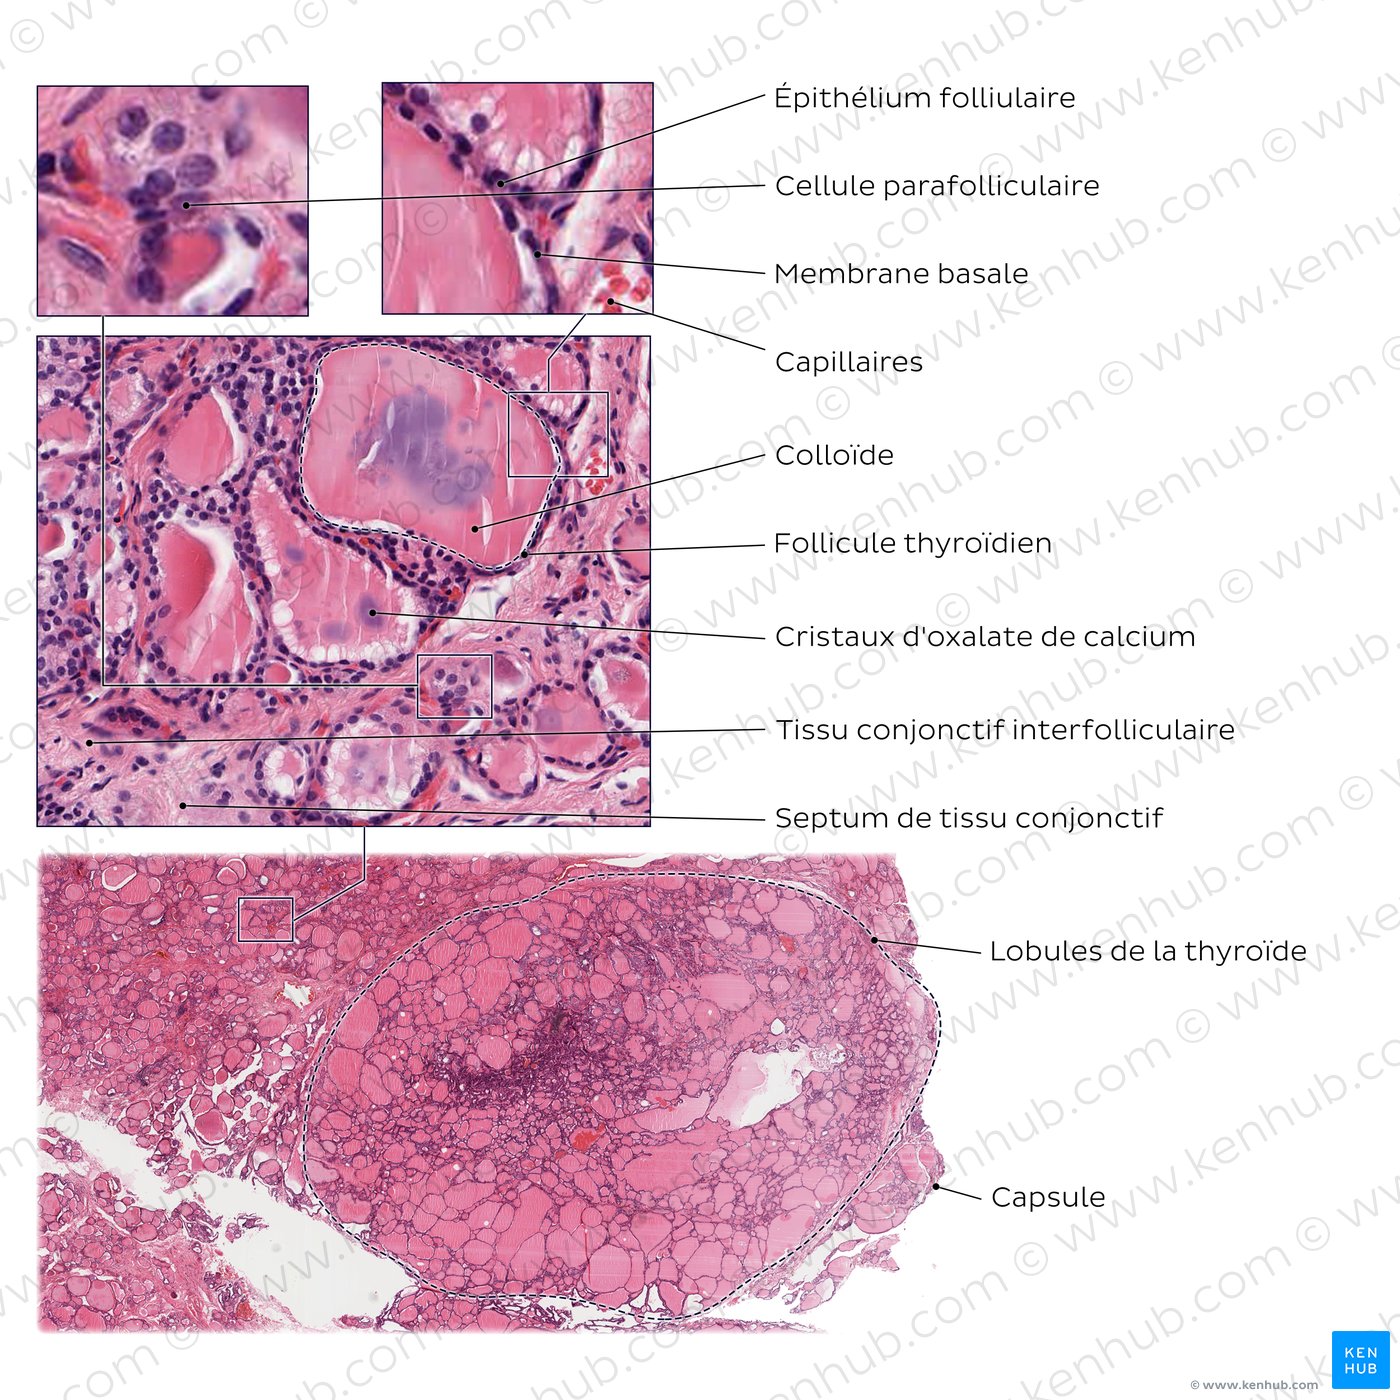 Lobules et structures internes de la glande thyroïde (schéma)